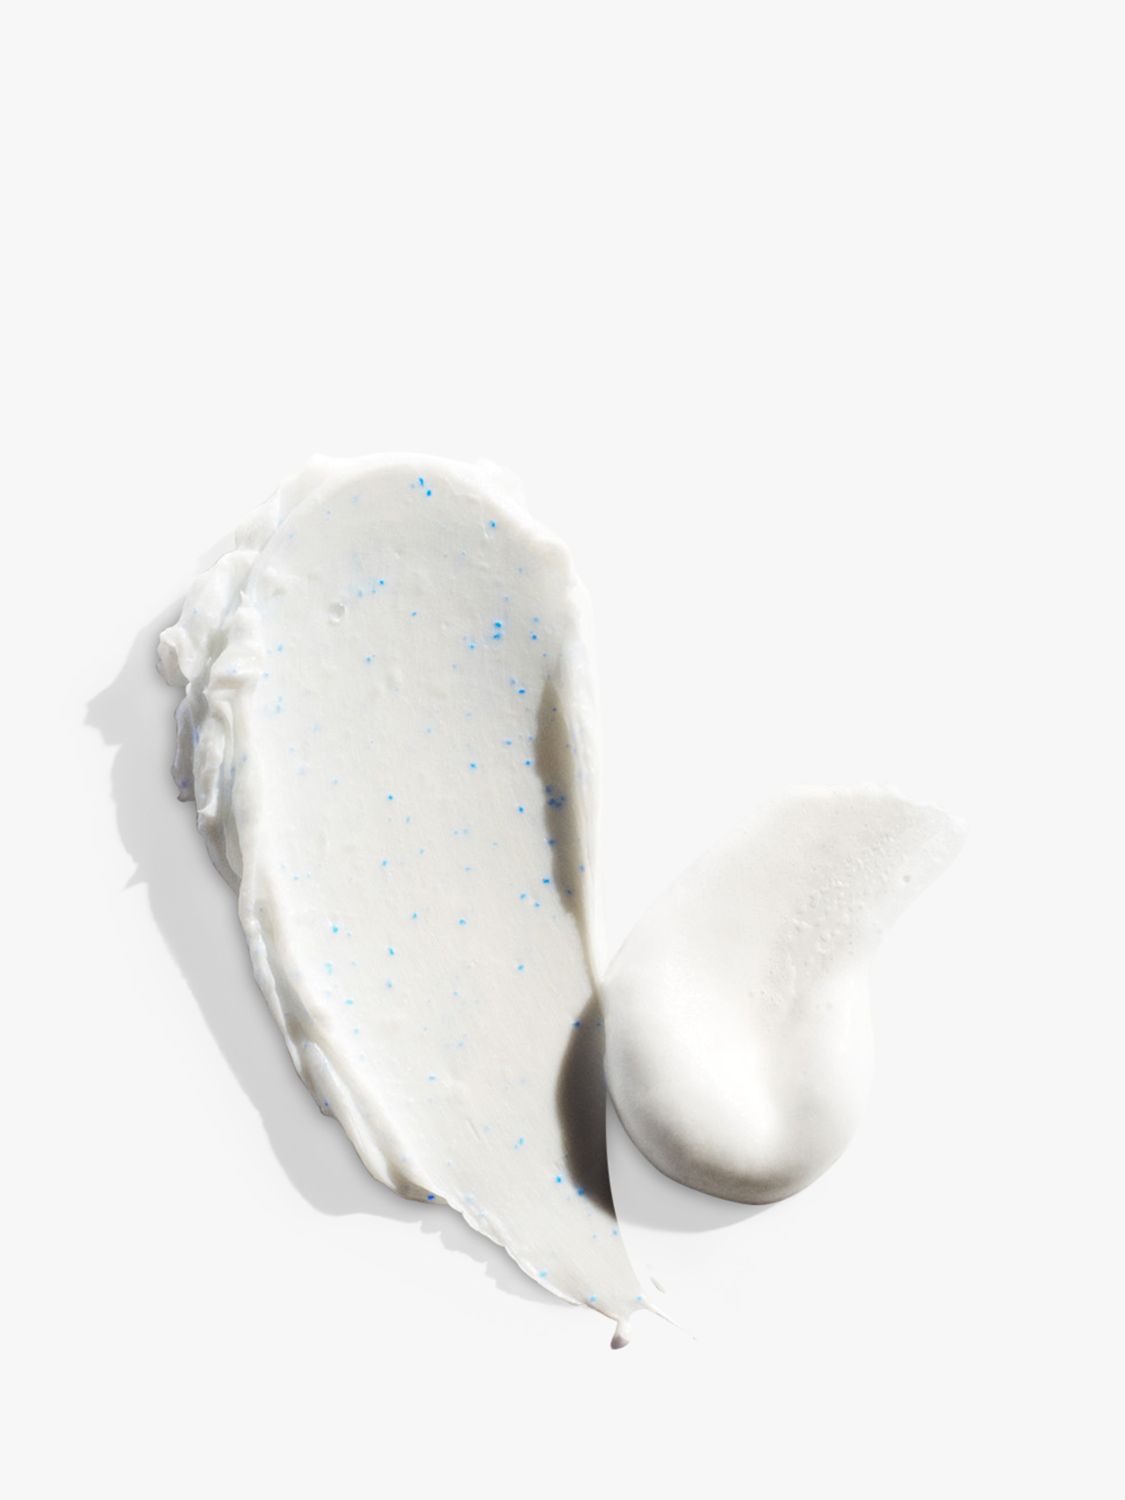 Shiseido Deep Cleansing Foam, 125ml 2